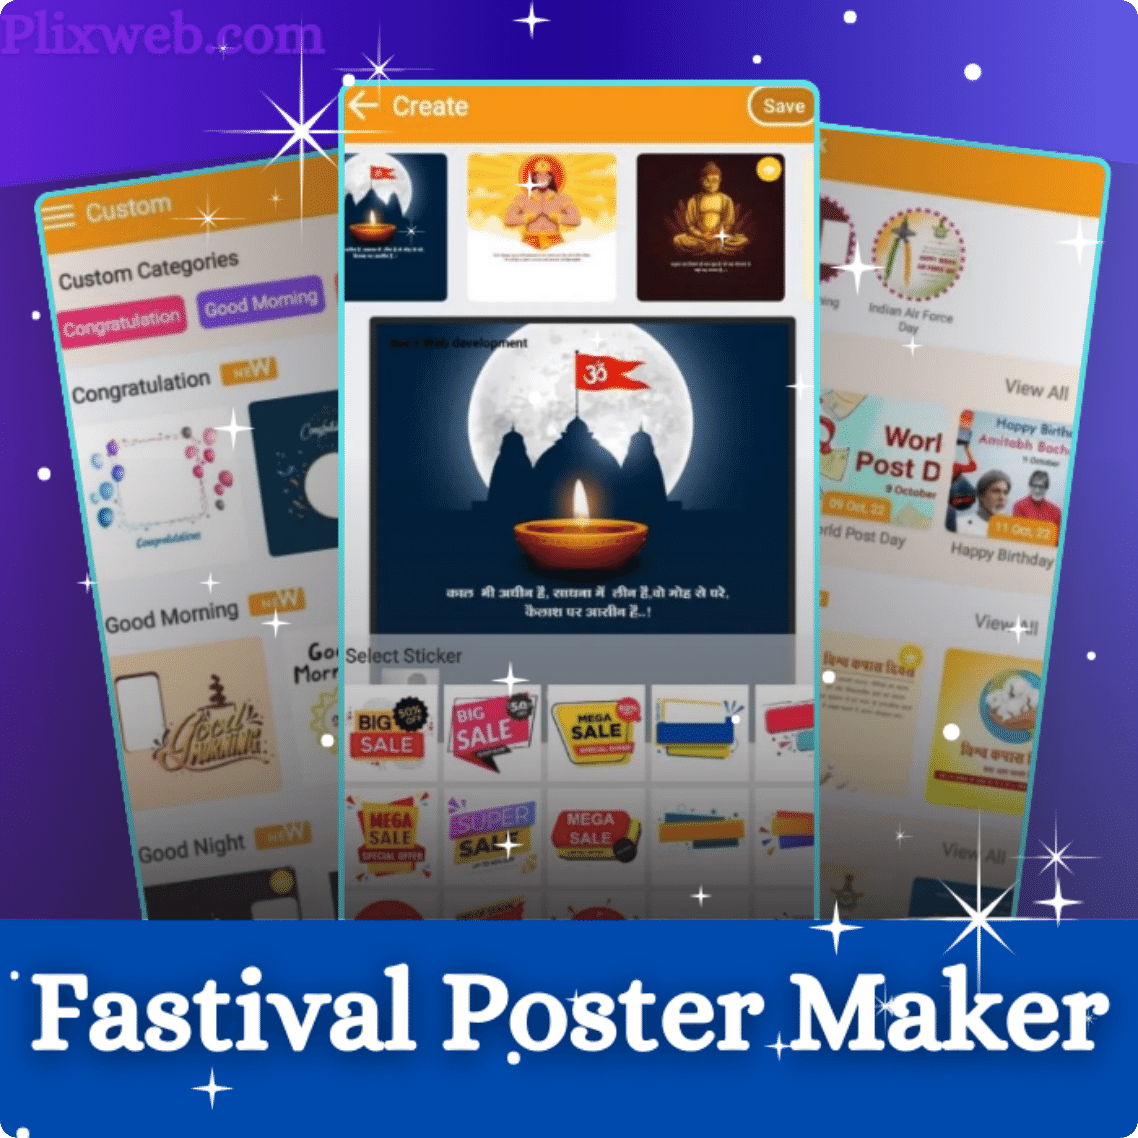 Fastival Poster Maker App Development